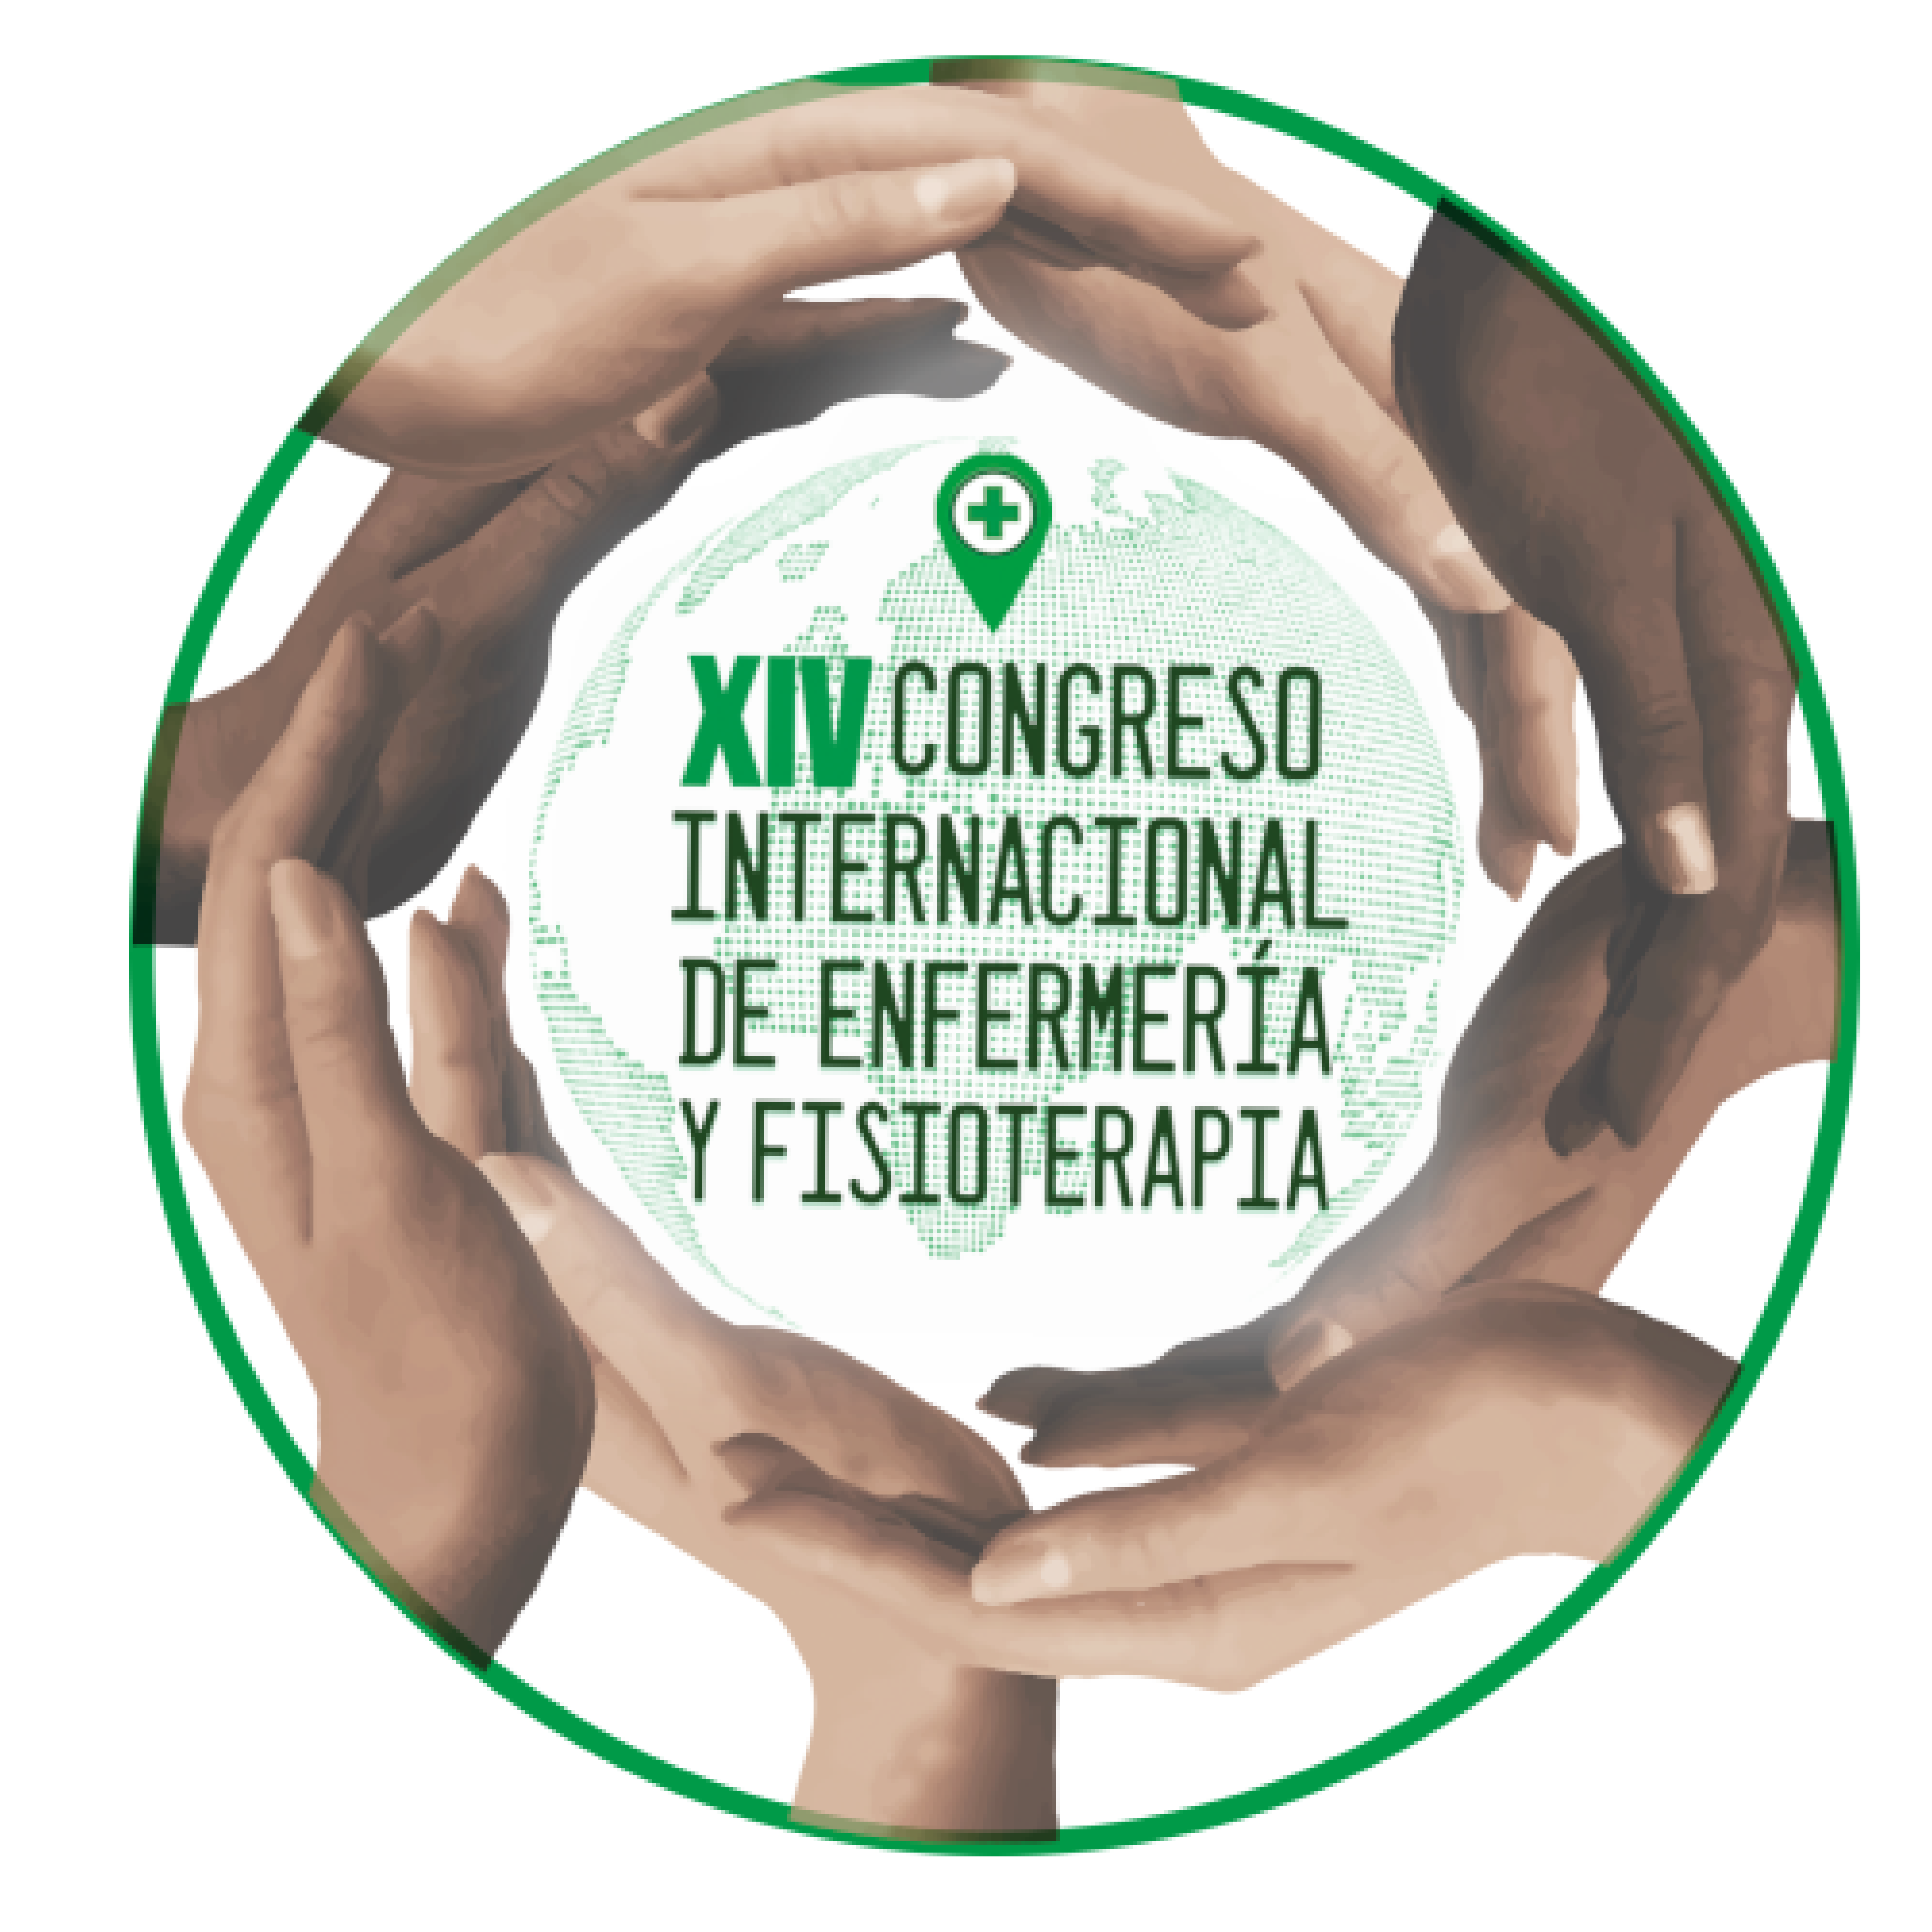 XIV Congreso Internacional de Enfermería y Fisioterapia “Ciudad de Granada”